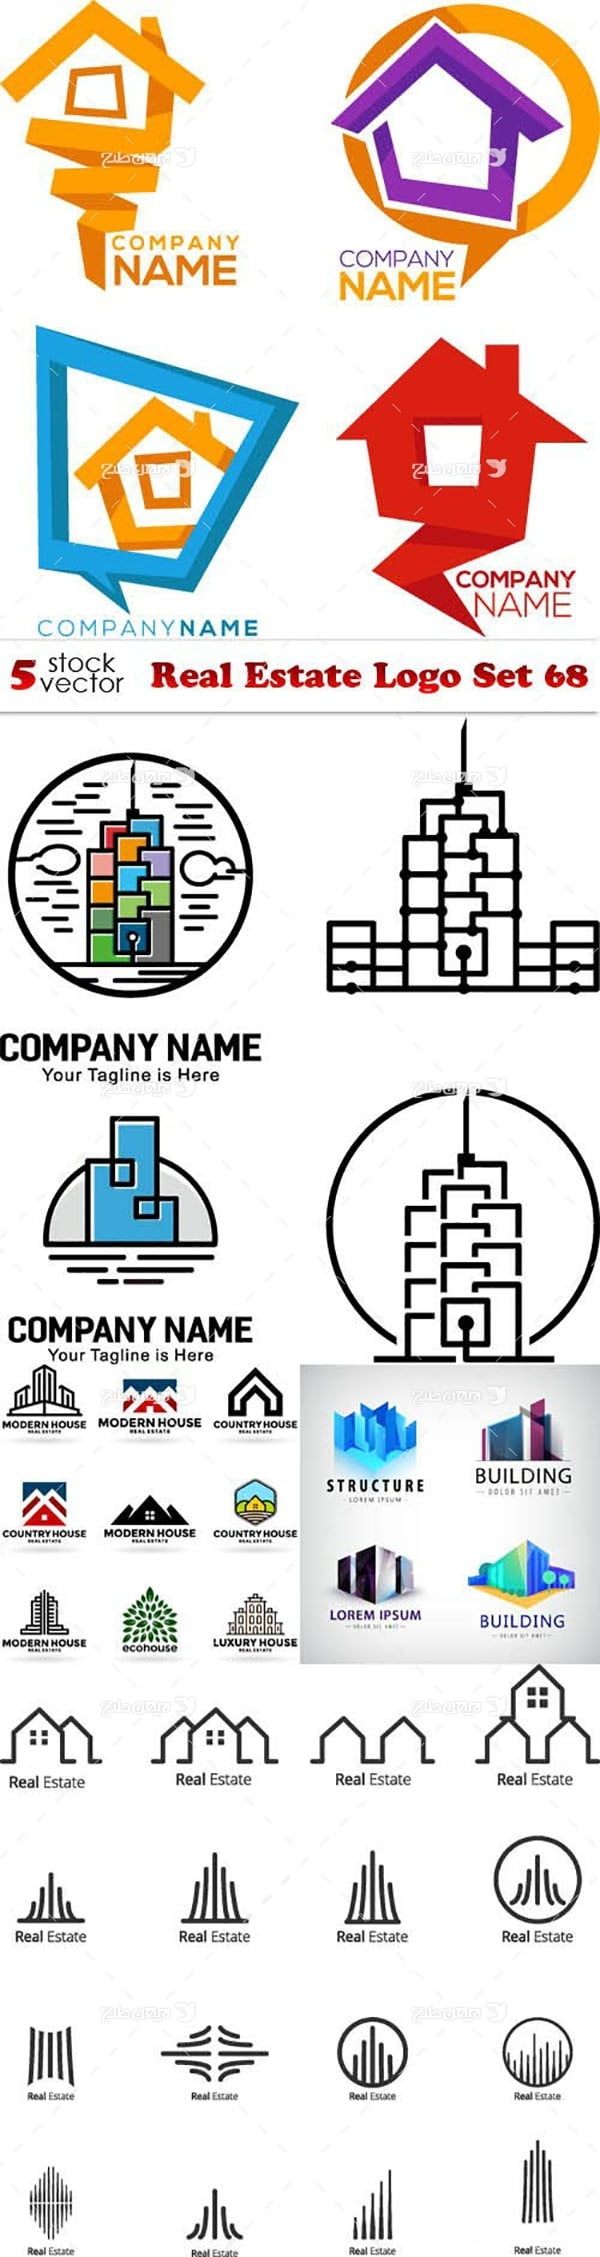 لوگو با موضوع ساختمان سازی و خانه سازی